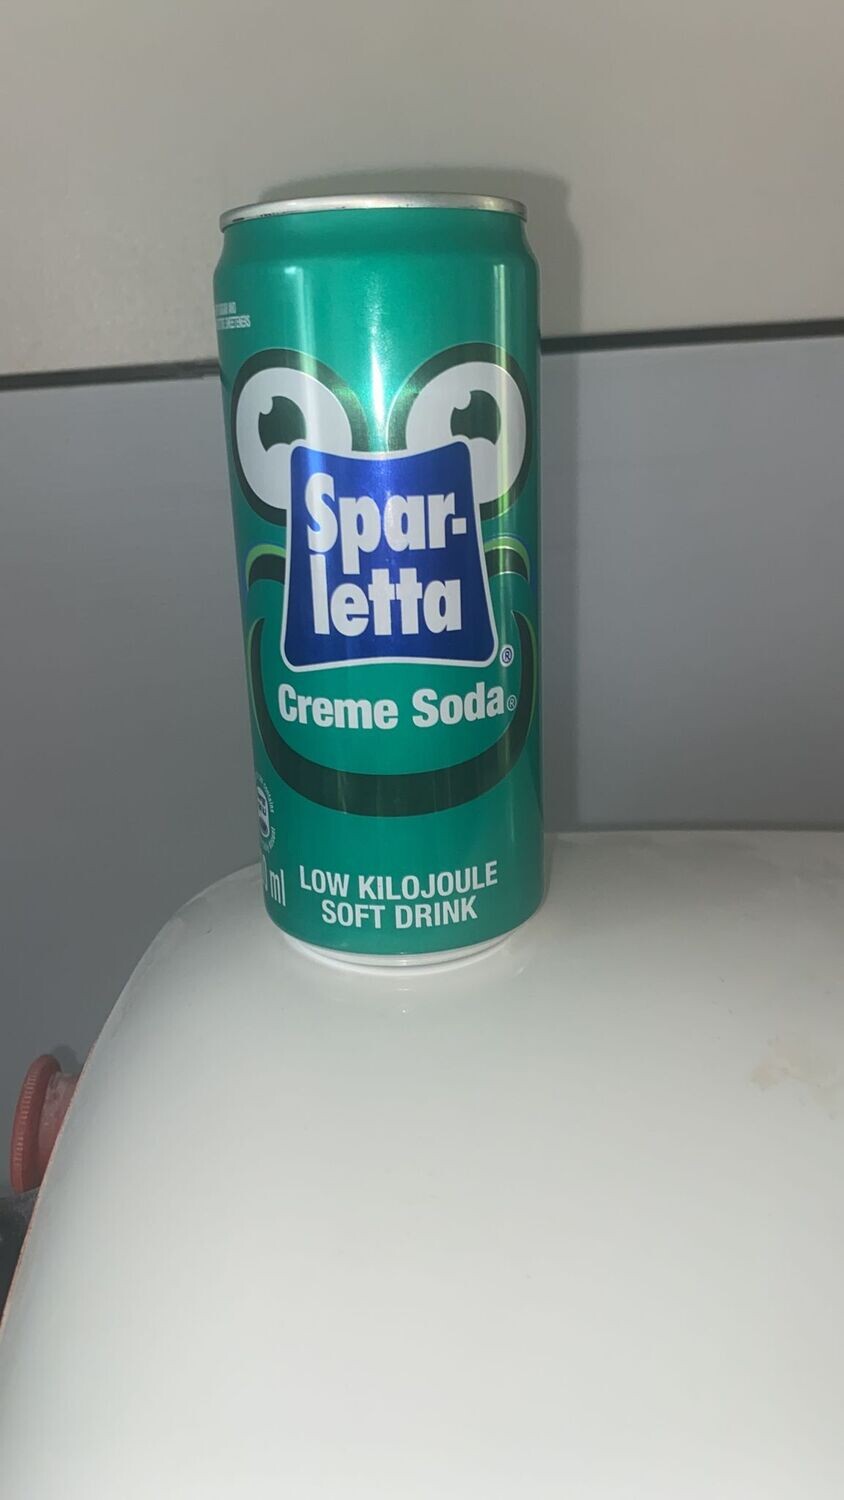 Spar-letta Creme Soda Soft Drink